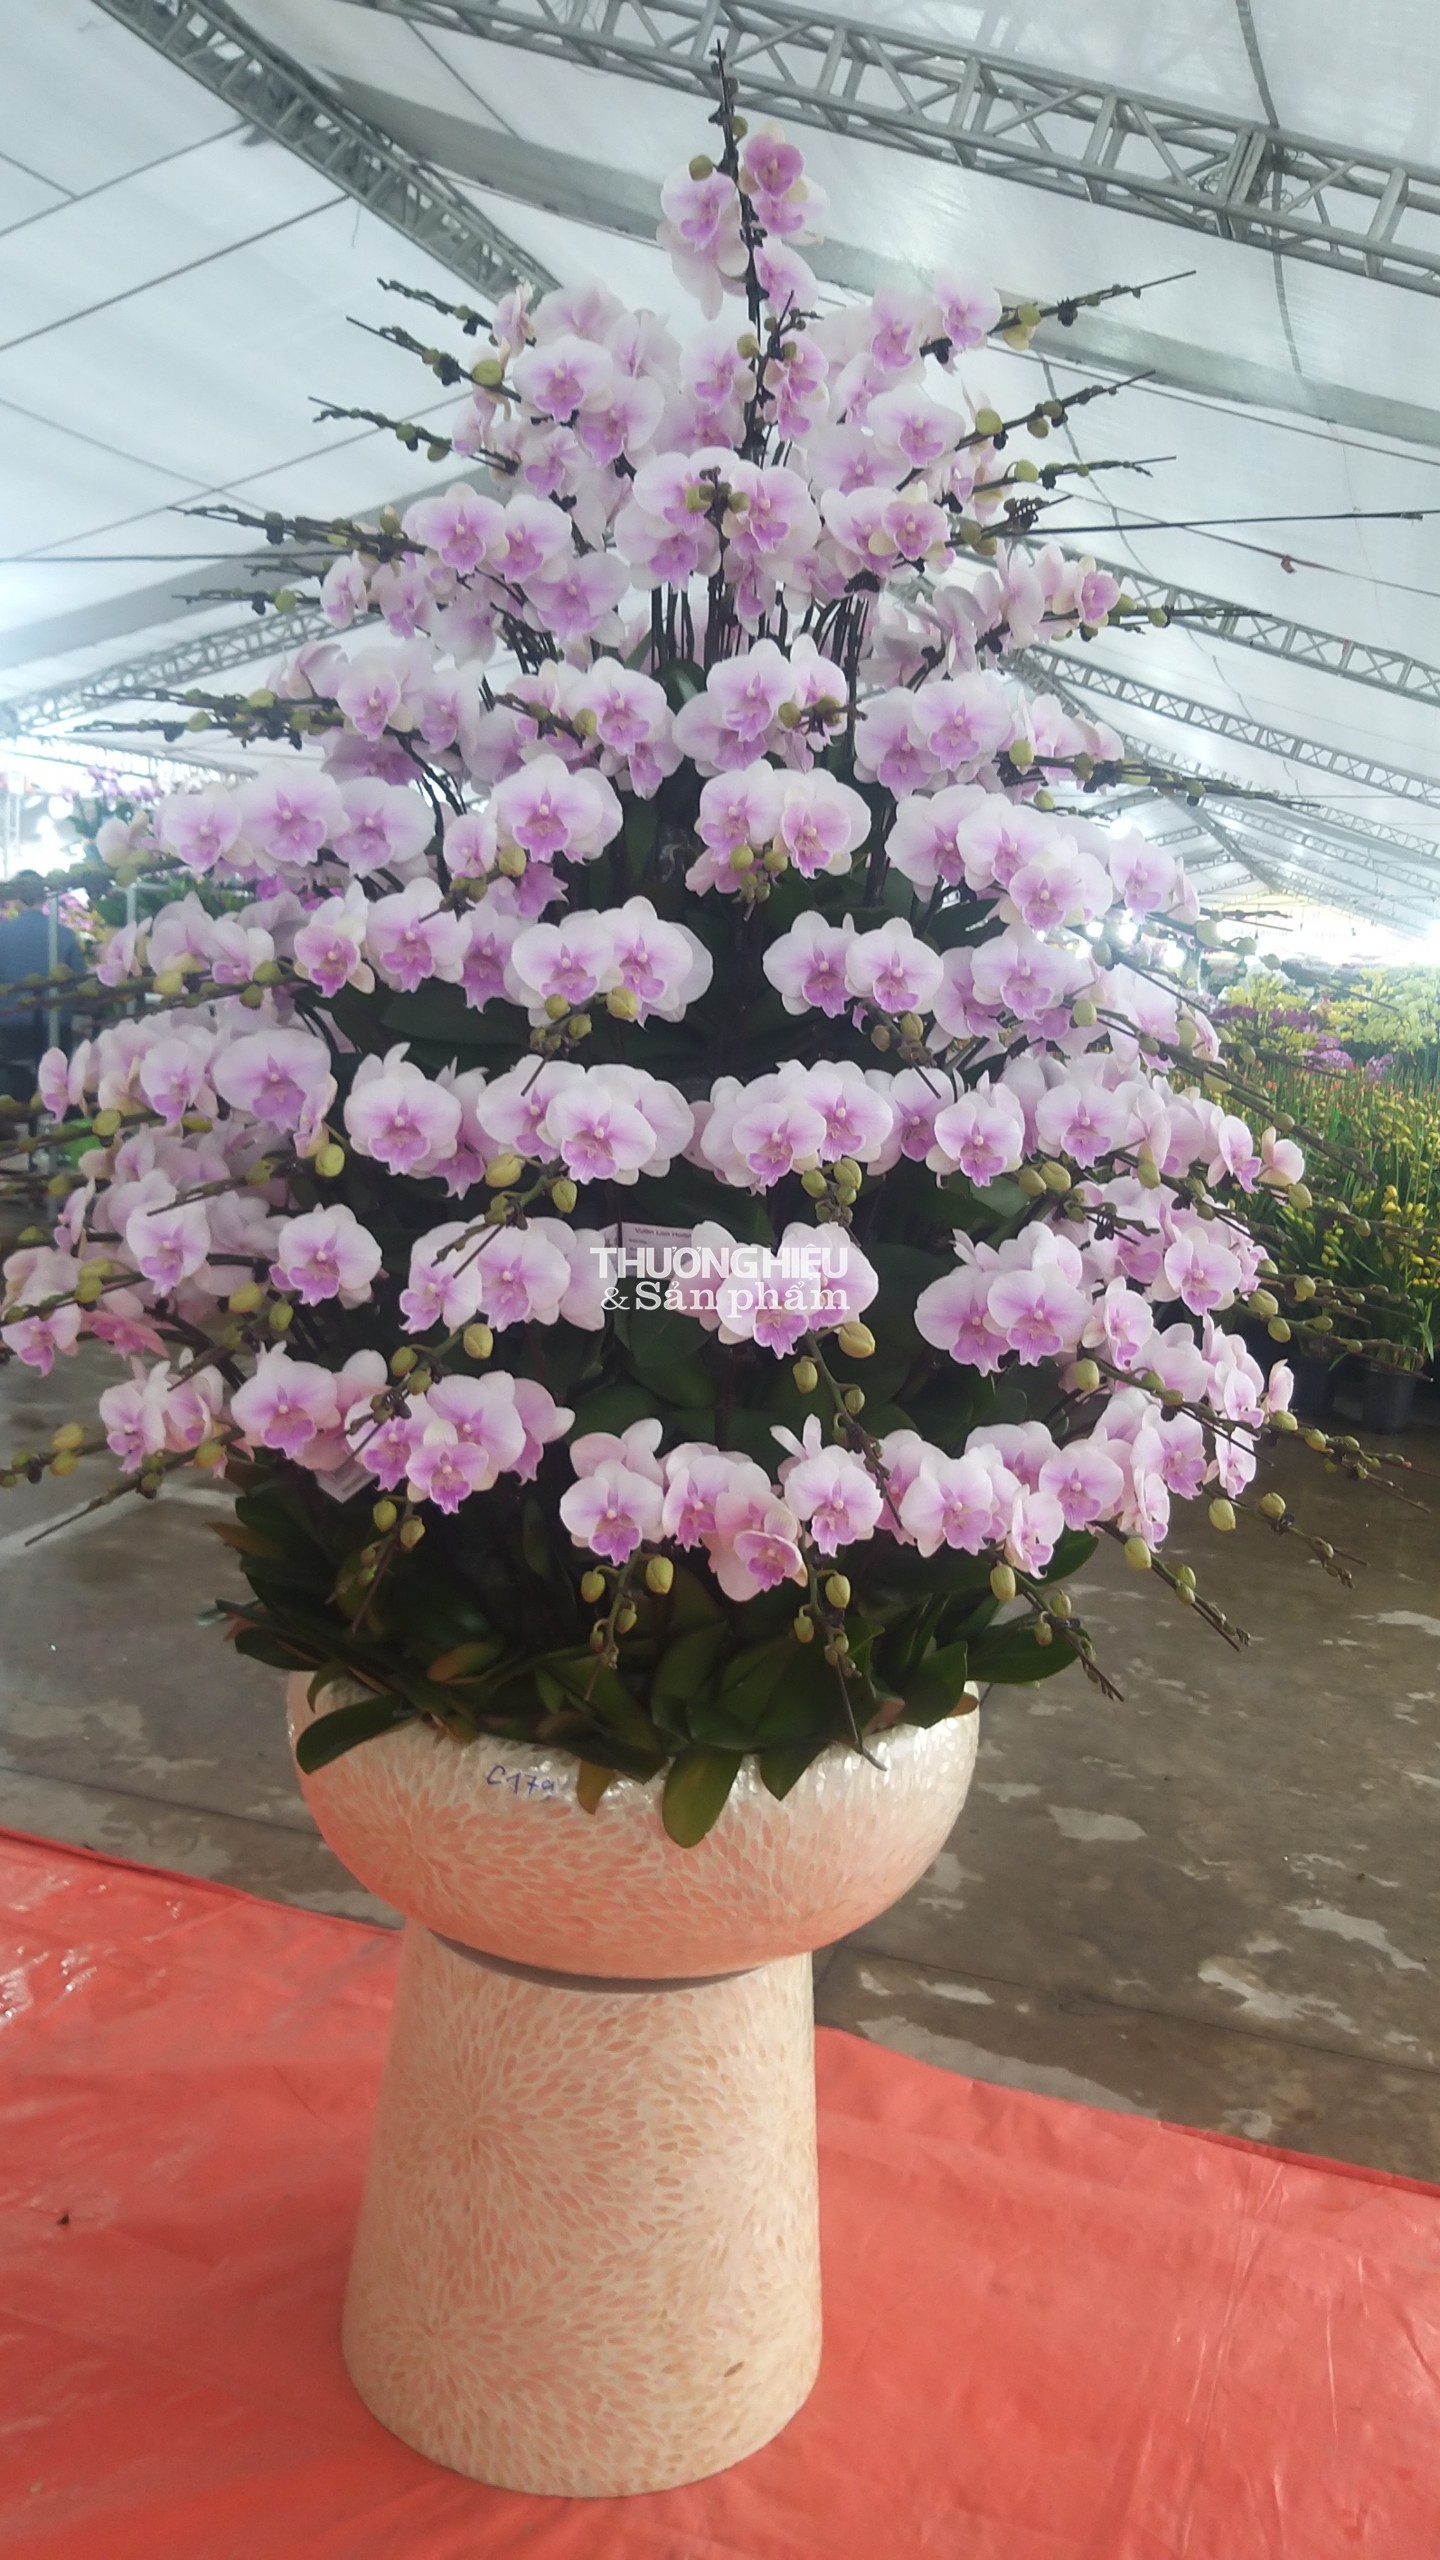 Chiêm ngưỡng siêu phẩm cây cảnh tại Hội hoa xuân - trưng bày sinh vật cảnh ở Quảng Ninh